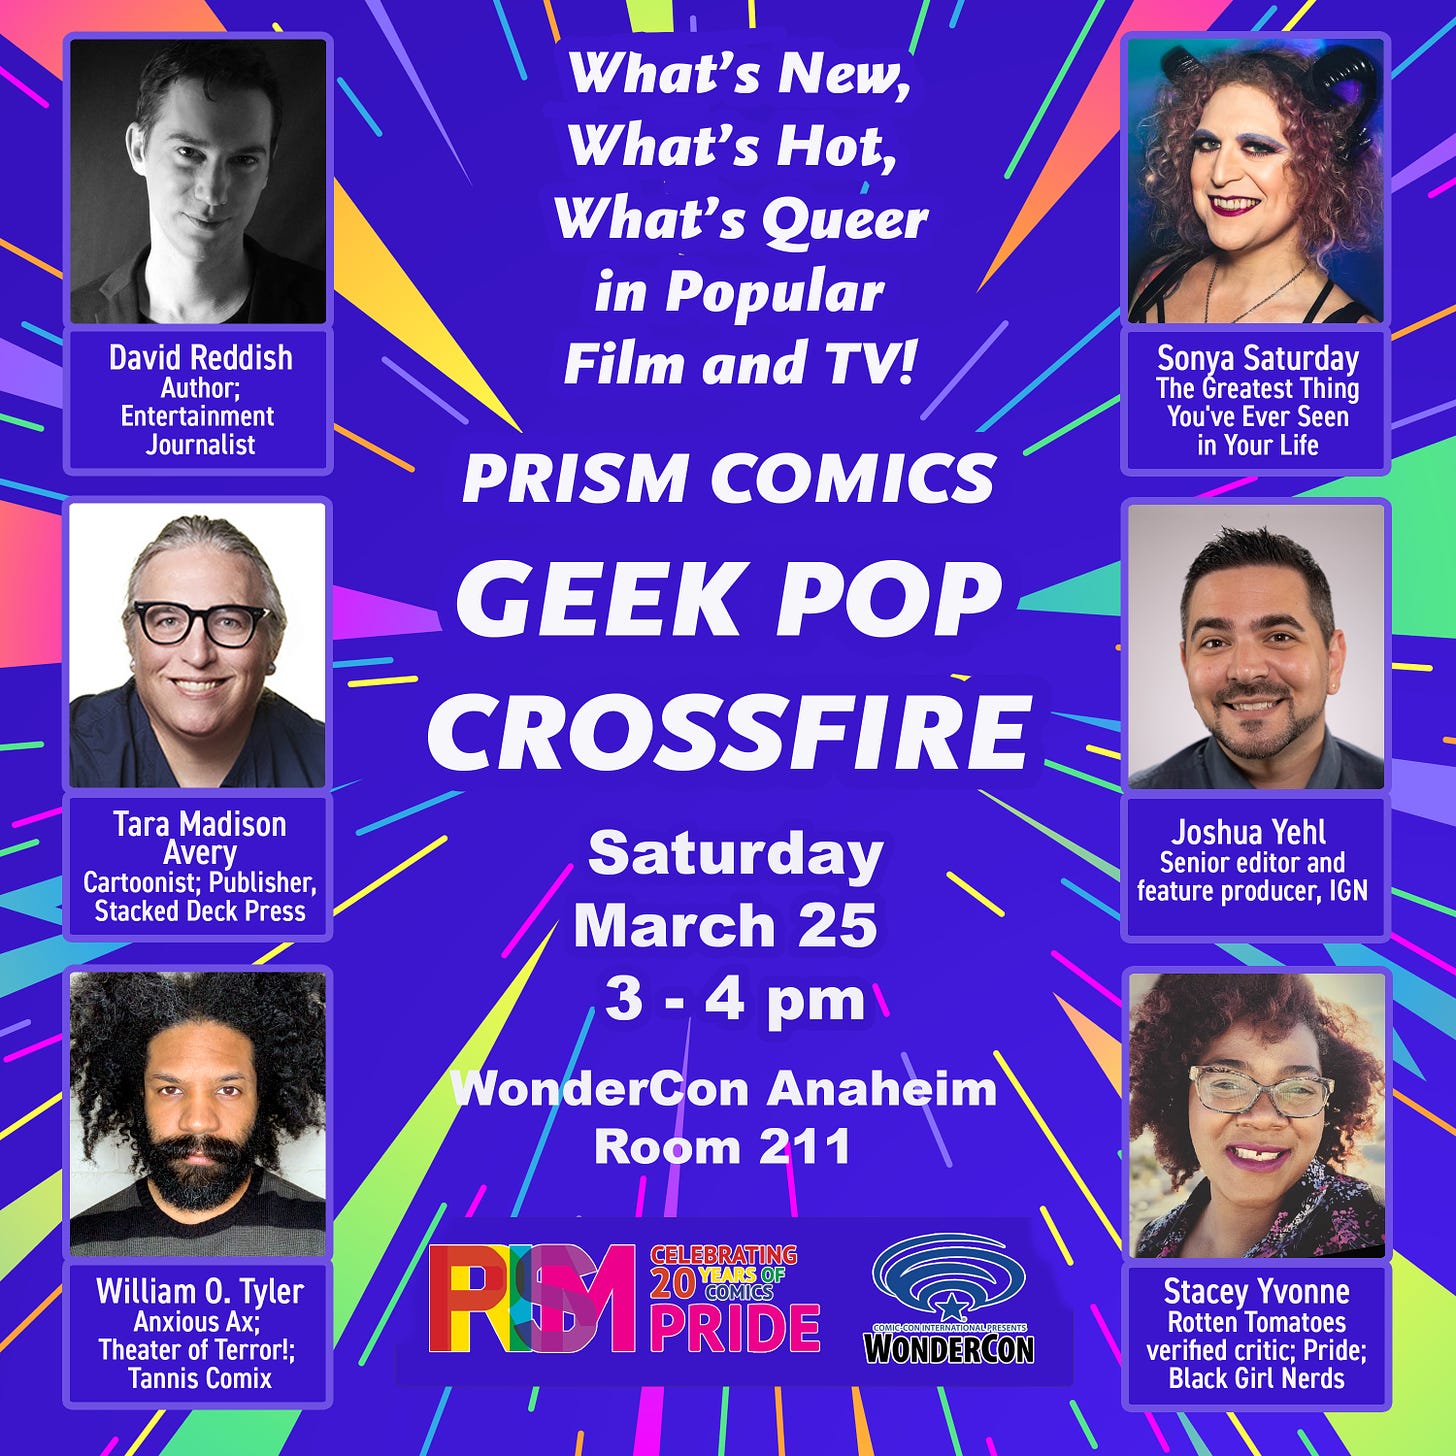 Prism Comics Geek Pop Crossfire panel flyer